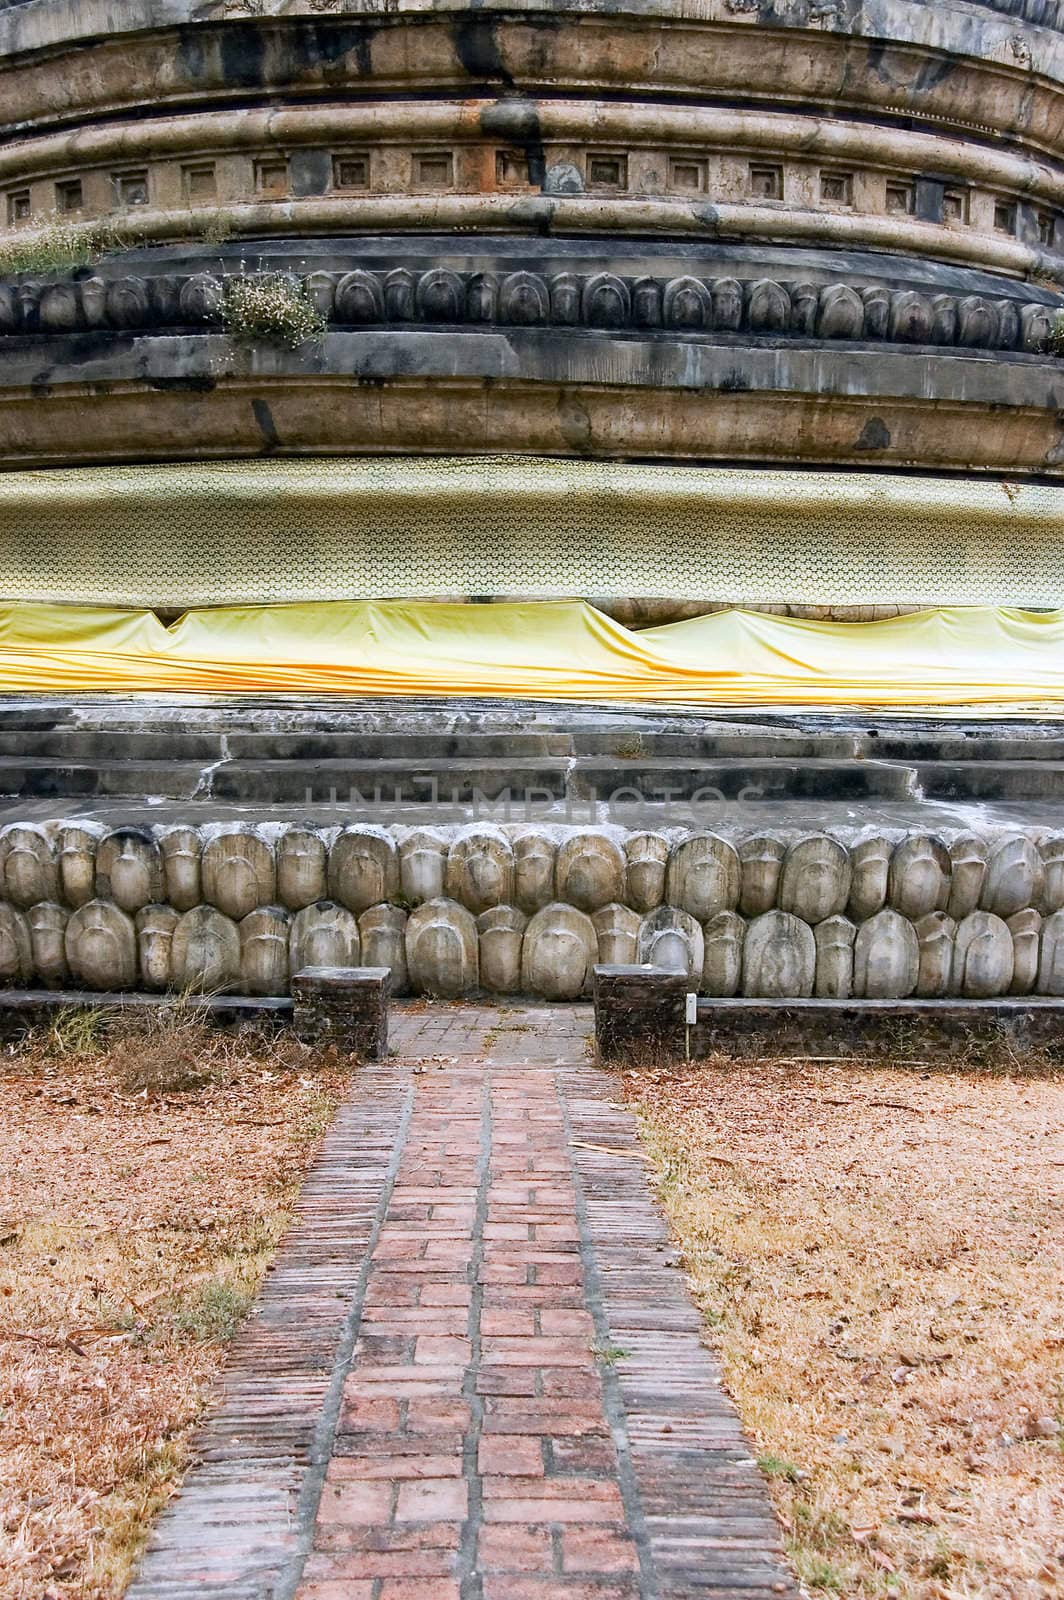 buddhist stupa